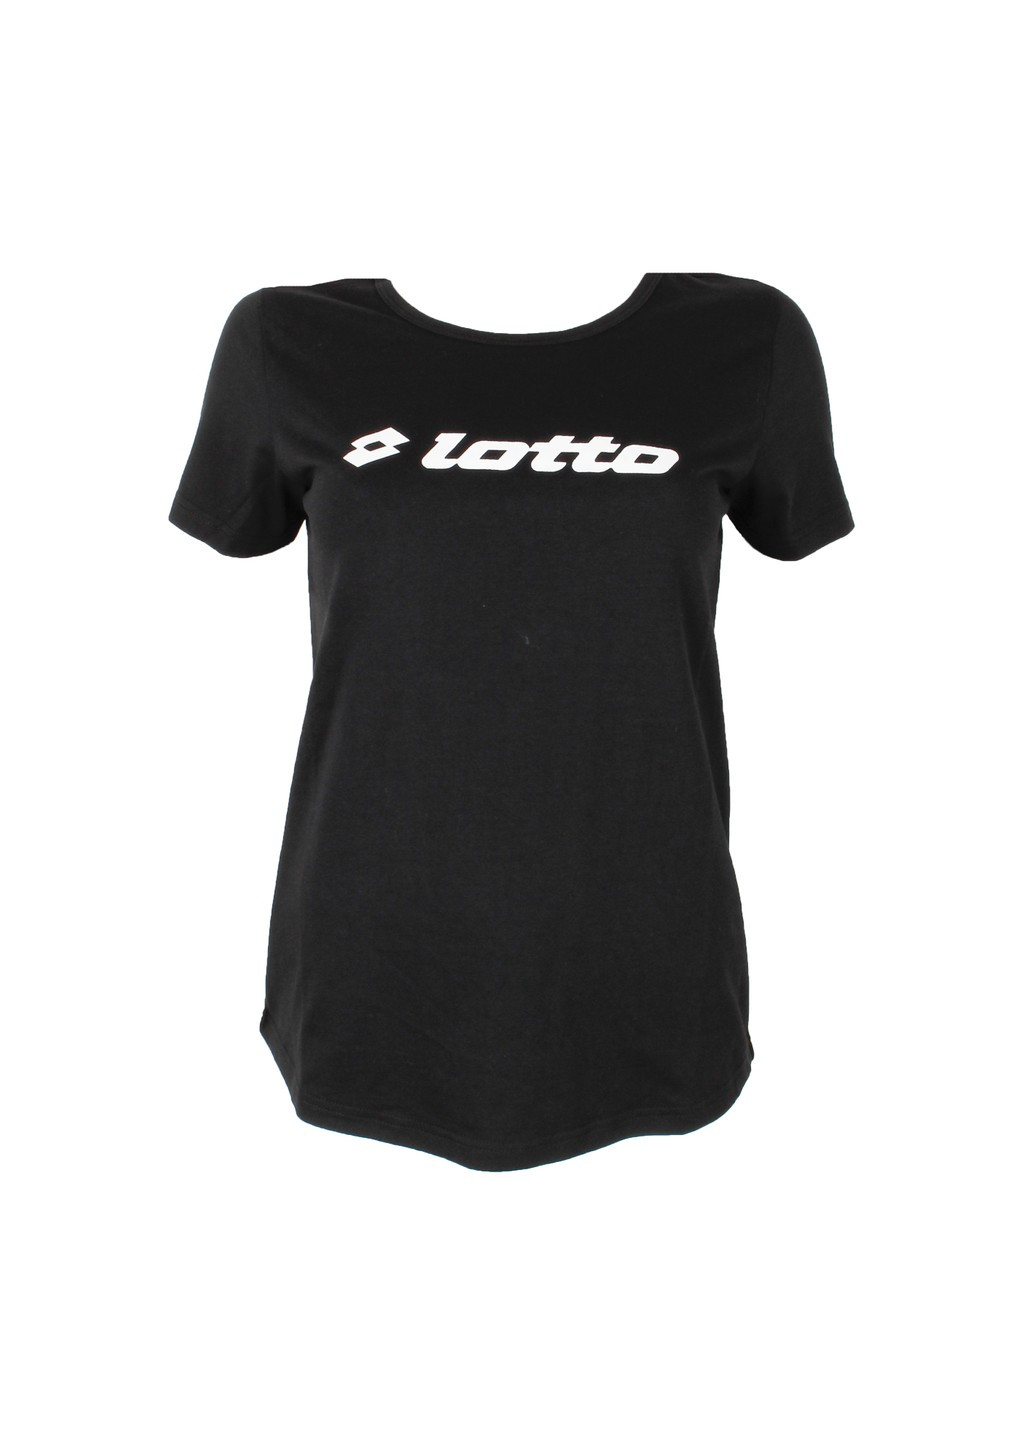 Черная футболка женская Lotto